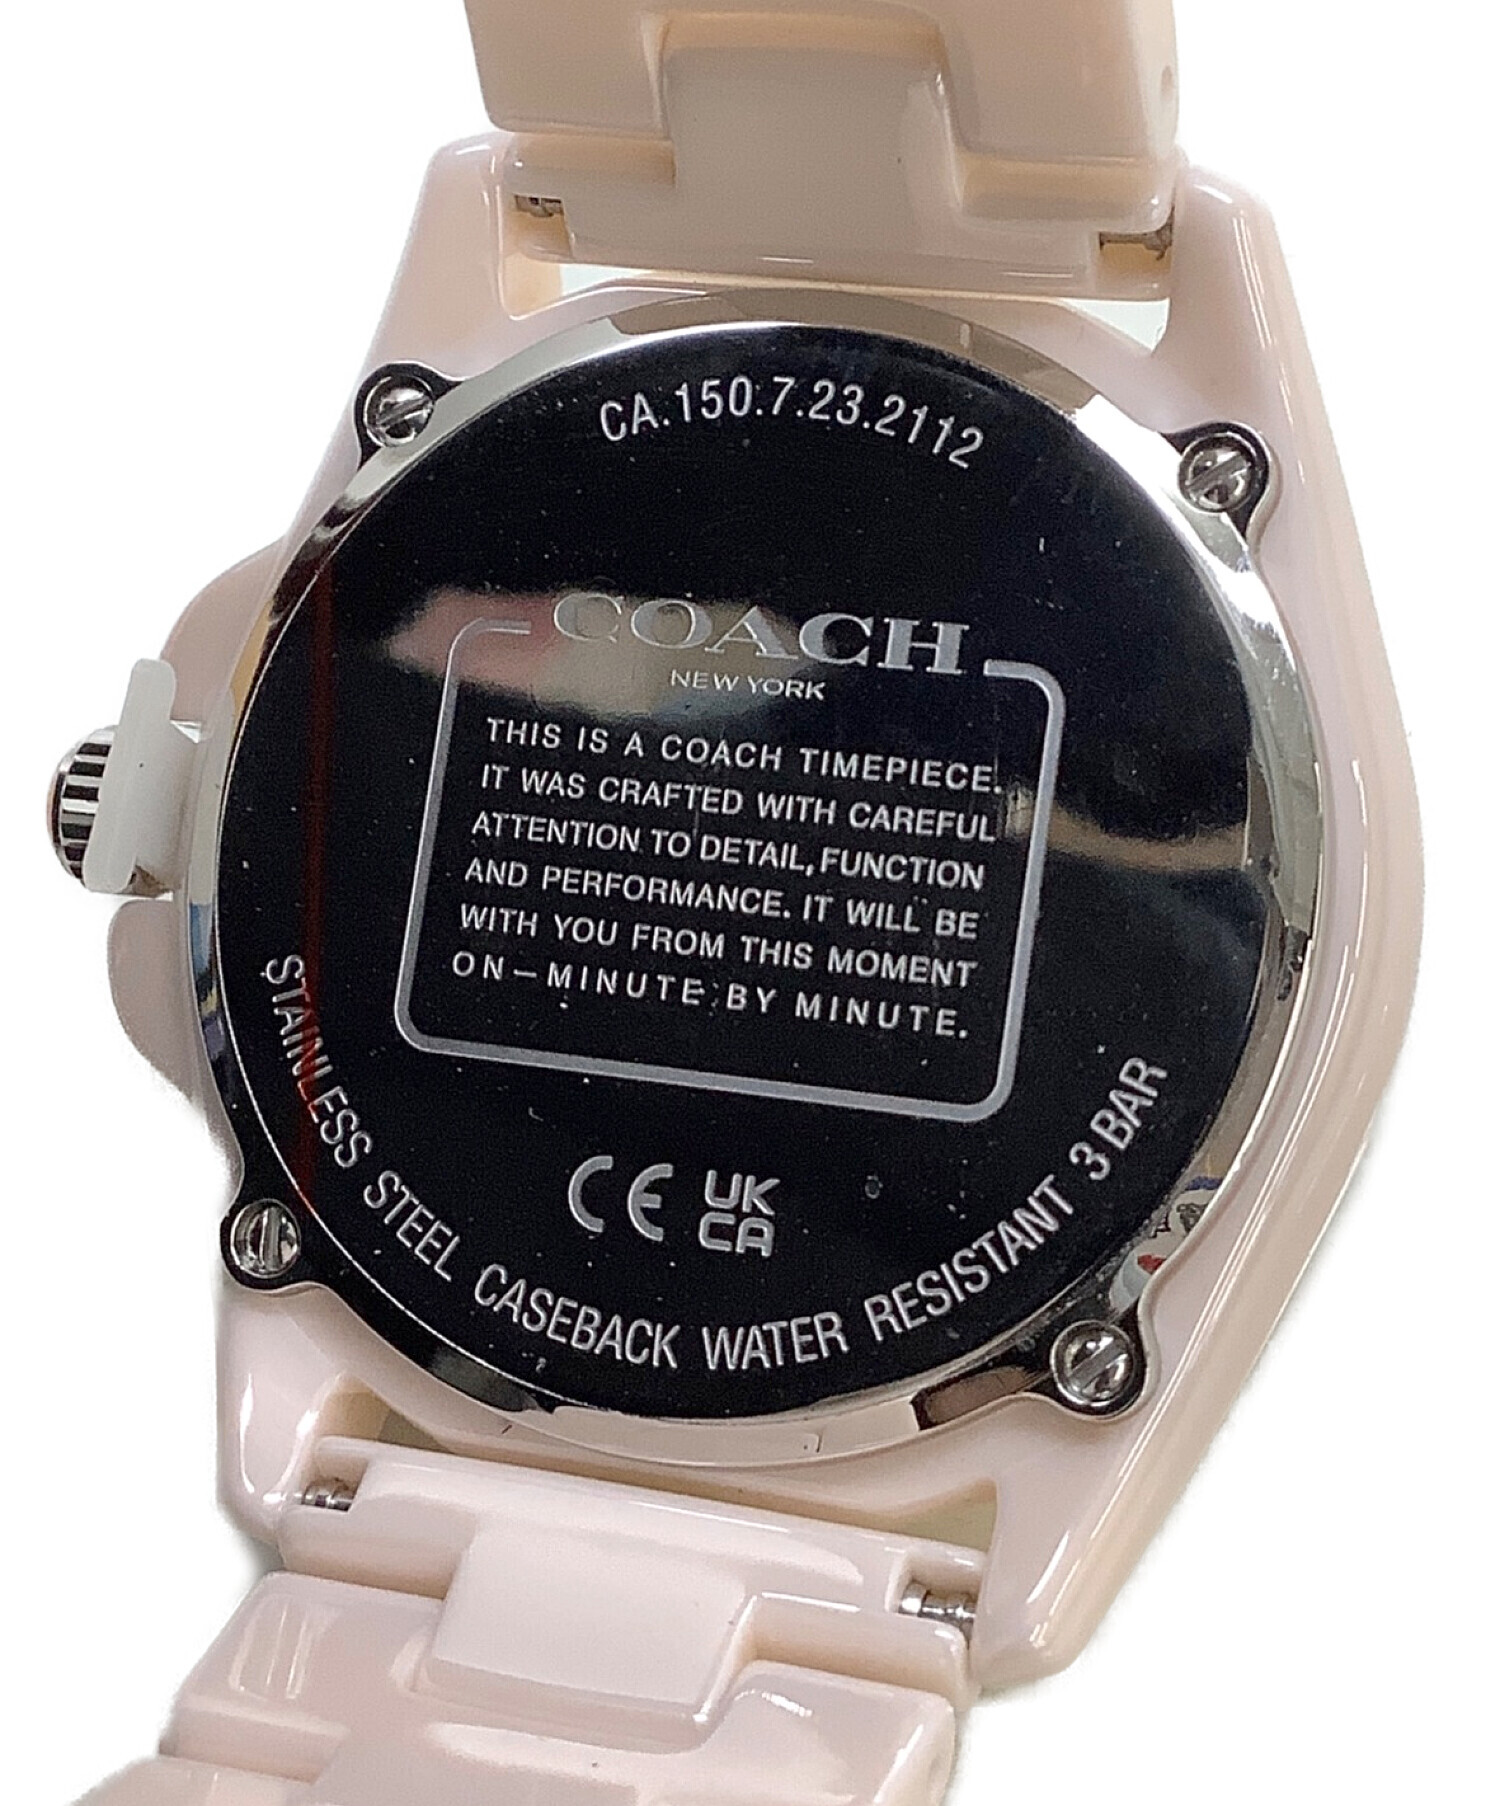 新品未使用品COACH時計 流行のアイテム - レザーベルト